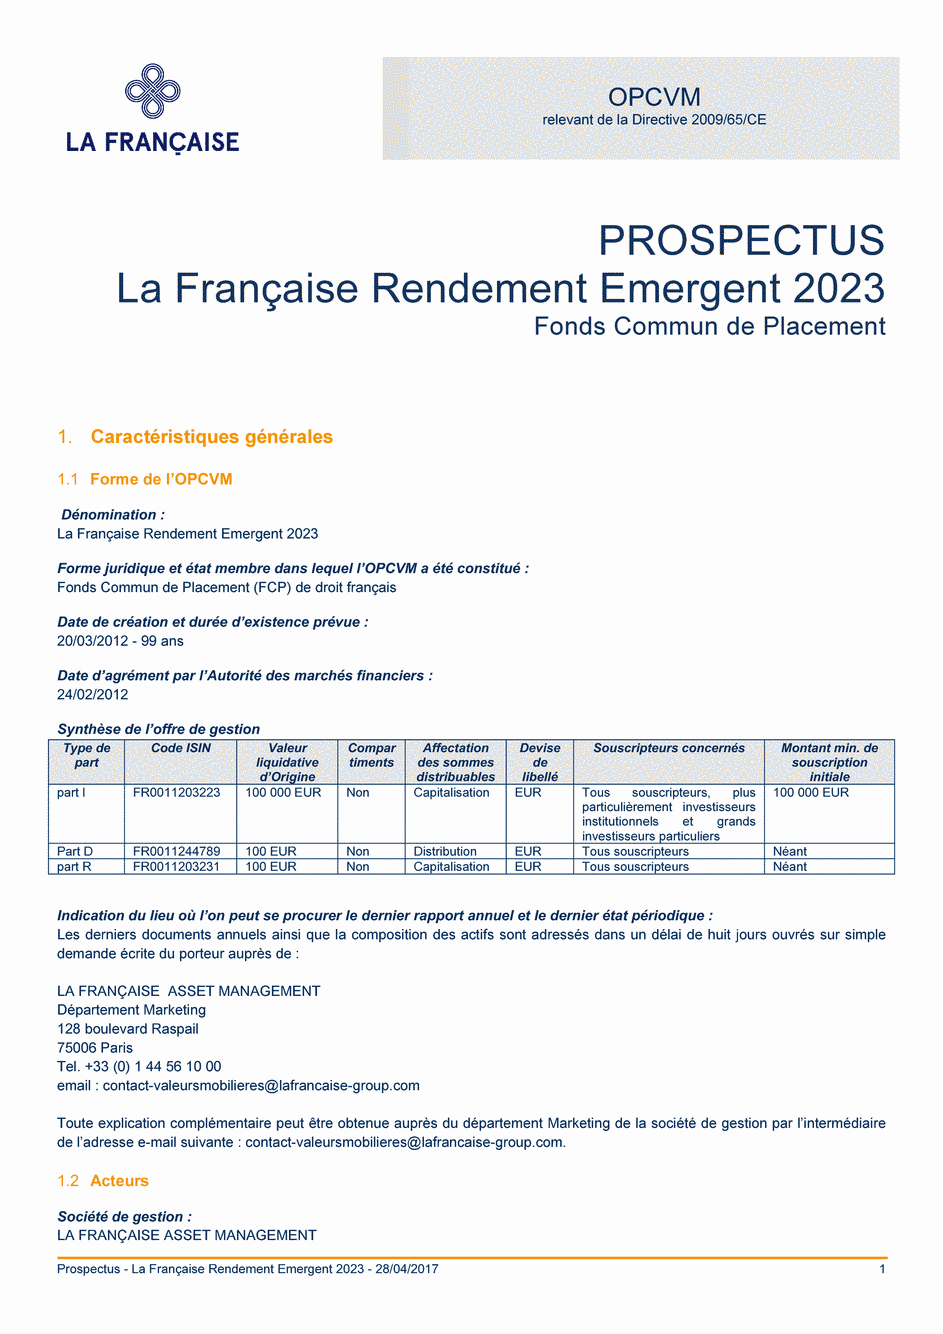 Prospectus La Française Rendement Emergent 2023 - Part R - 28/04/2017 - Français